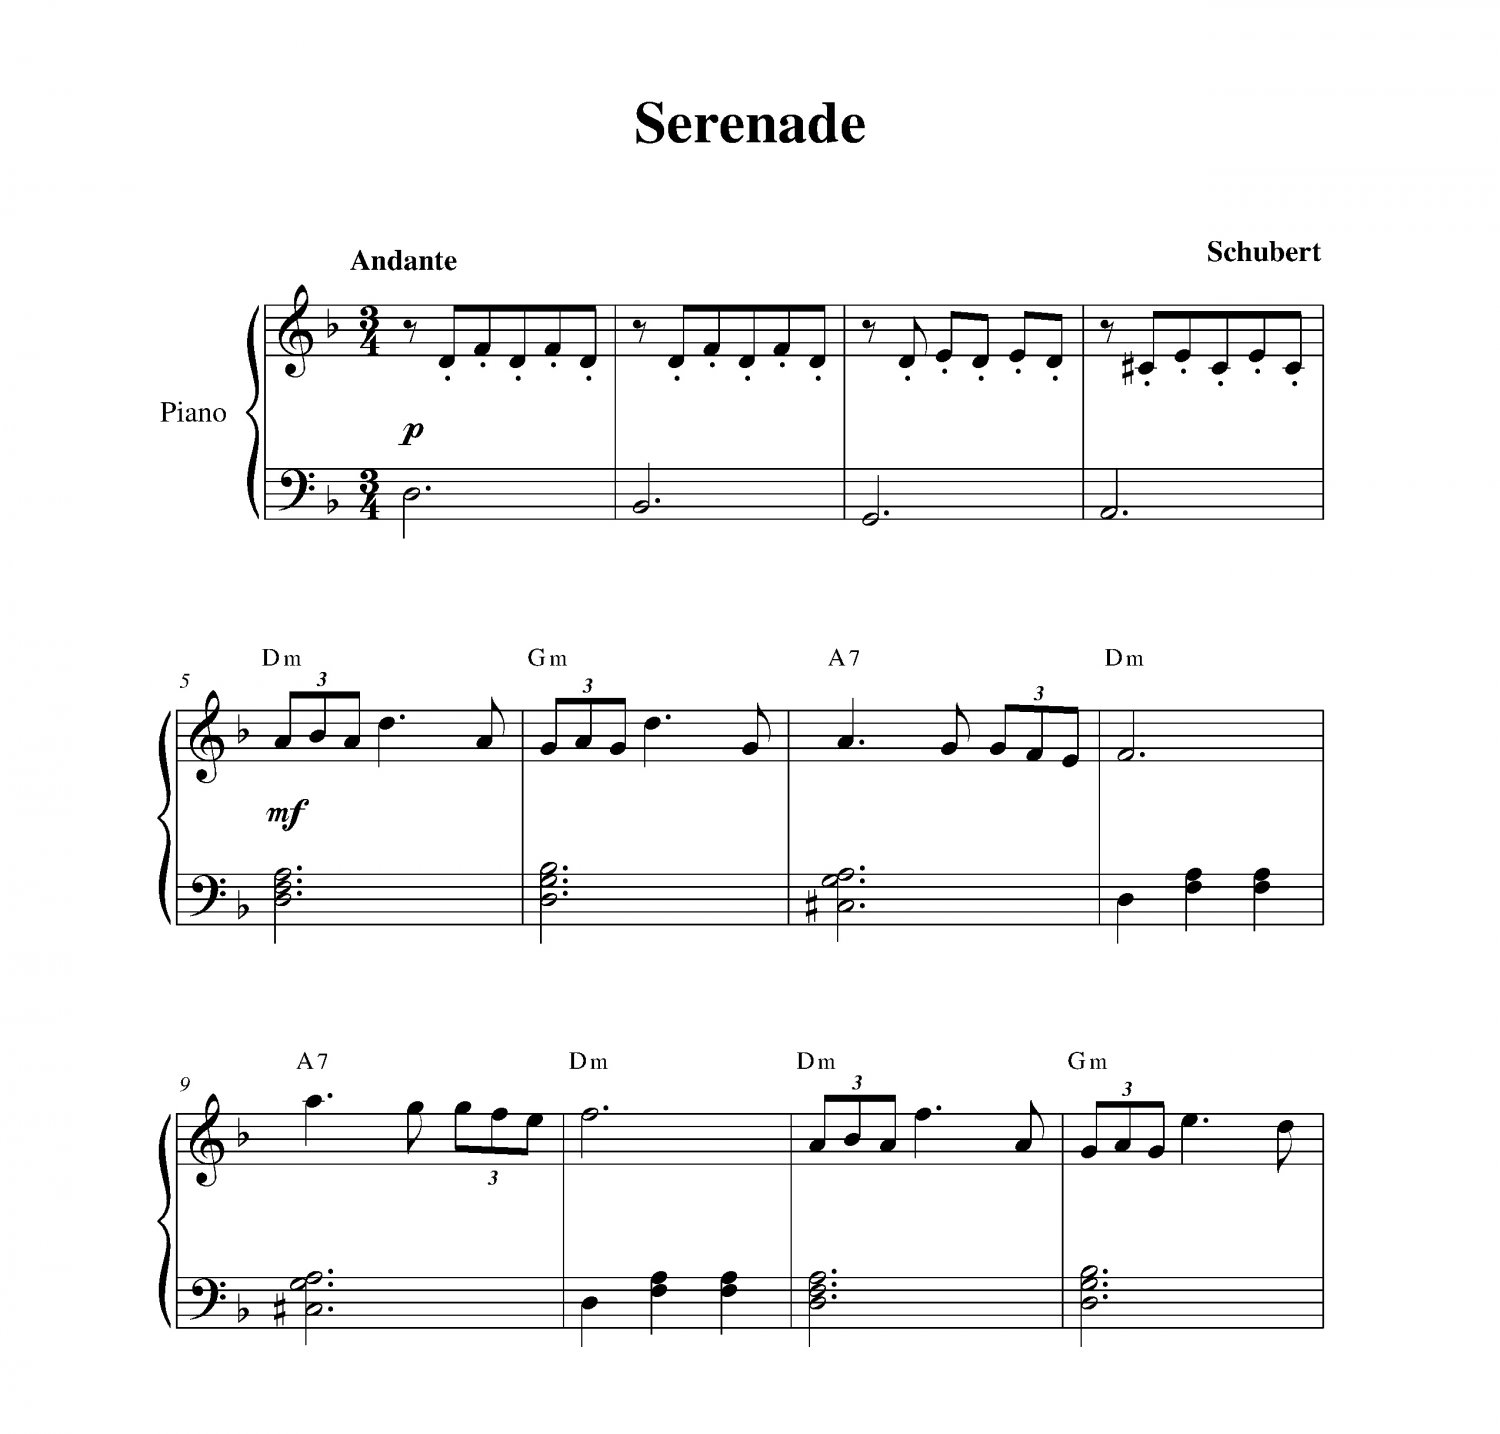 Шуберт транскрипции листа. Serenade Schubert Ноты для фортепиано. Серенада Шуберт Ноты для фортепиано легкая версия. Шуберт Серенада Ноты для фортепиано для начинающих. Шуберт вечерняя Серенада Ноты для фортепиано.